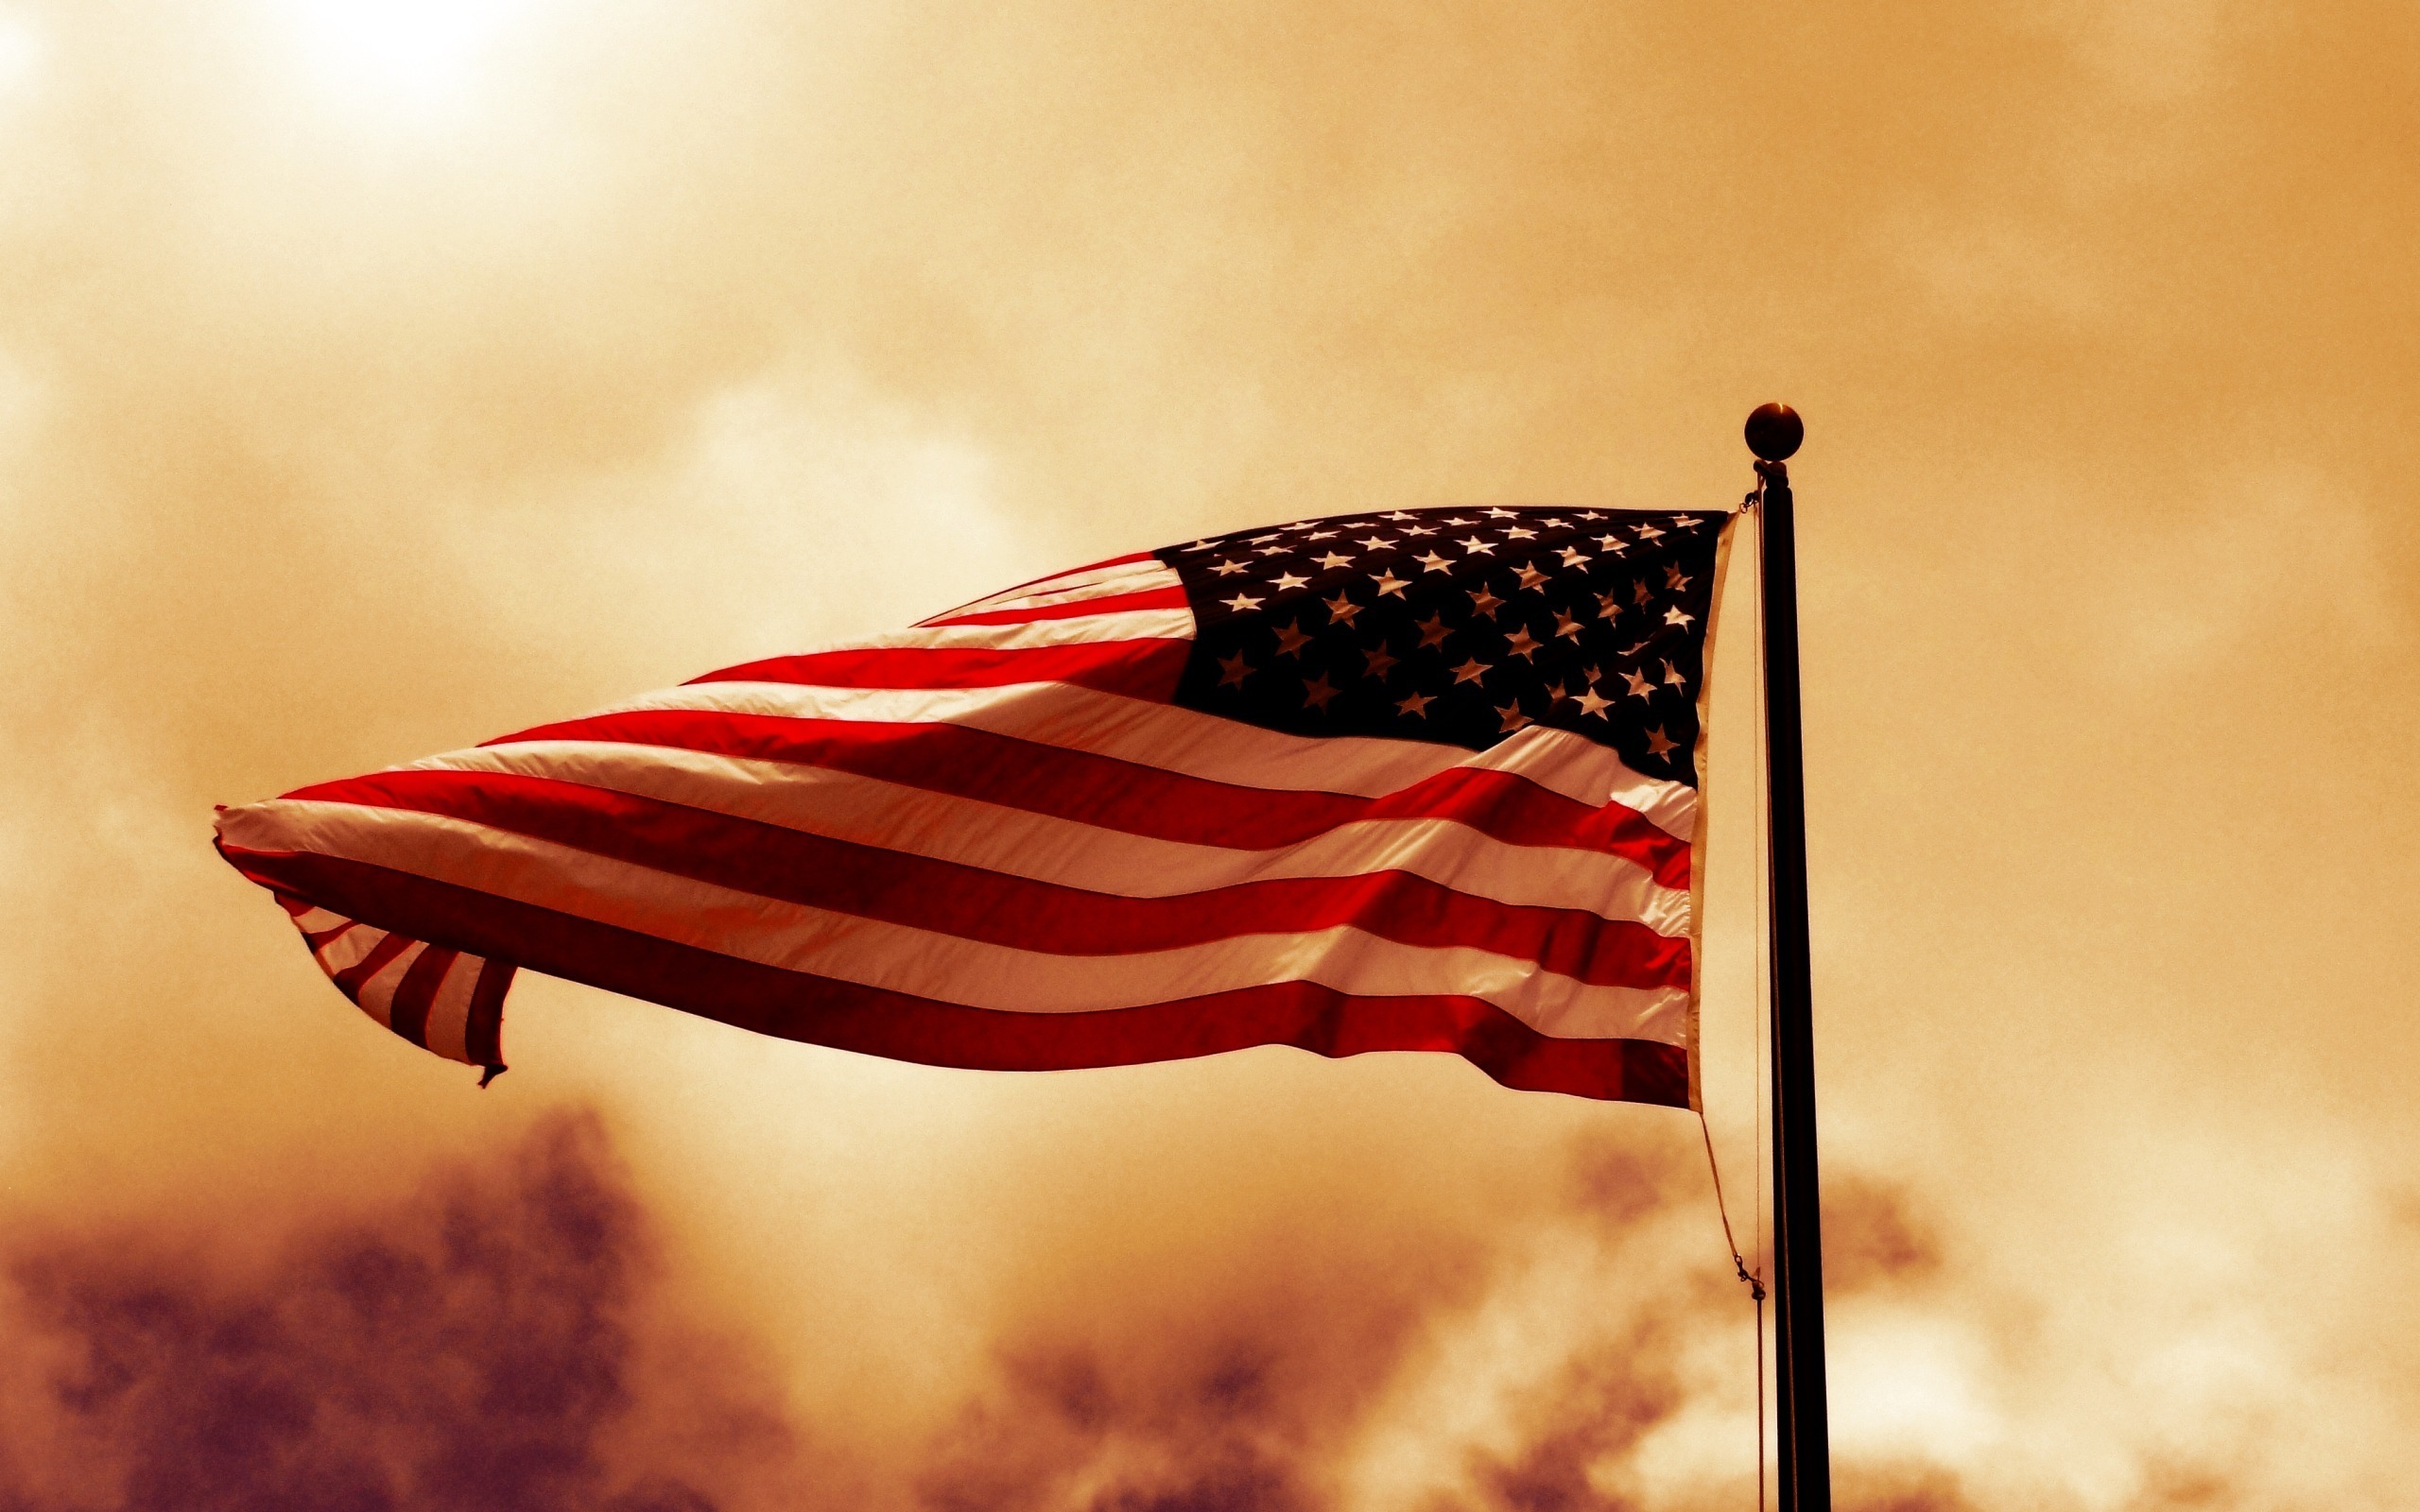 Скачать обои бесплатно Сделано Человеком, Американский Флаг картинка на рабочий стол ПК